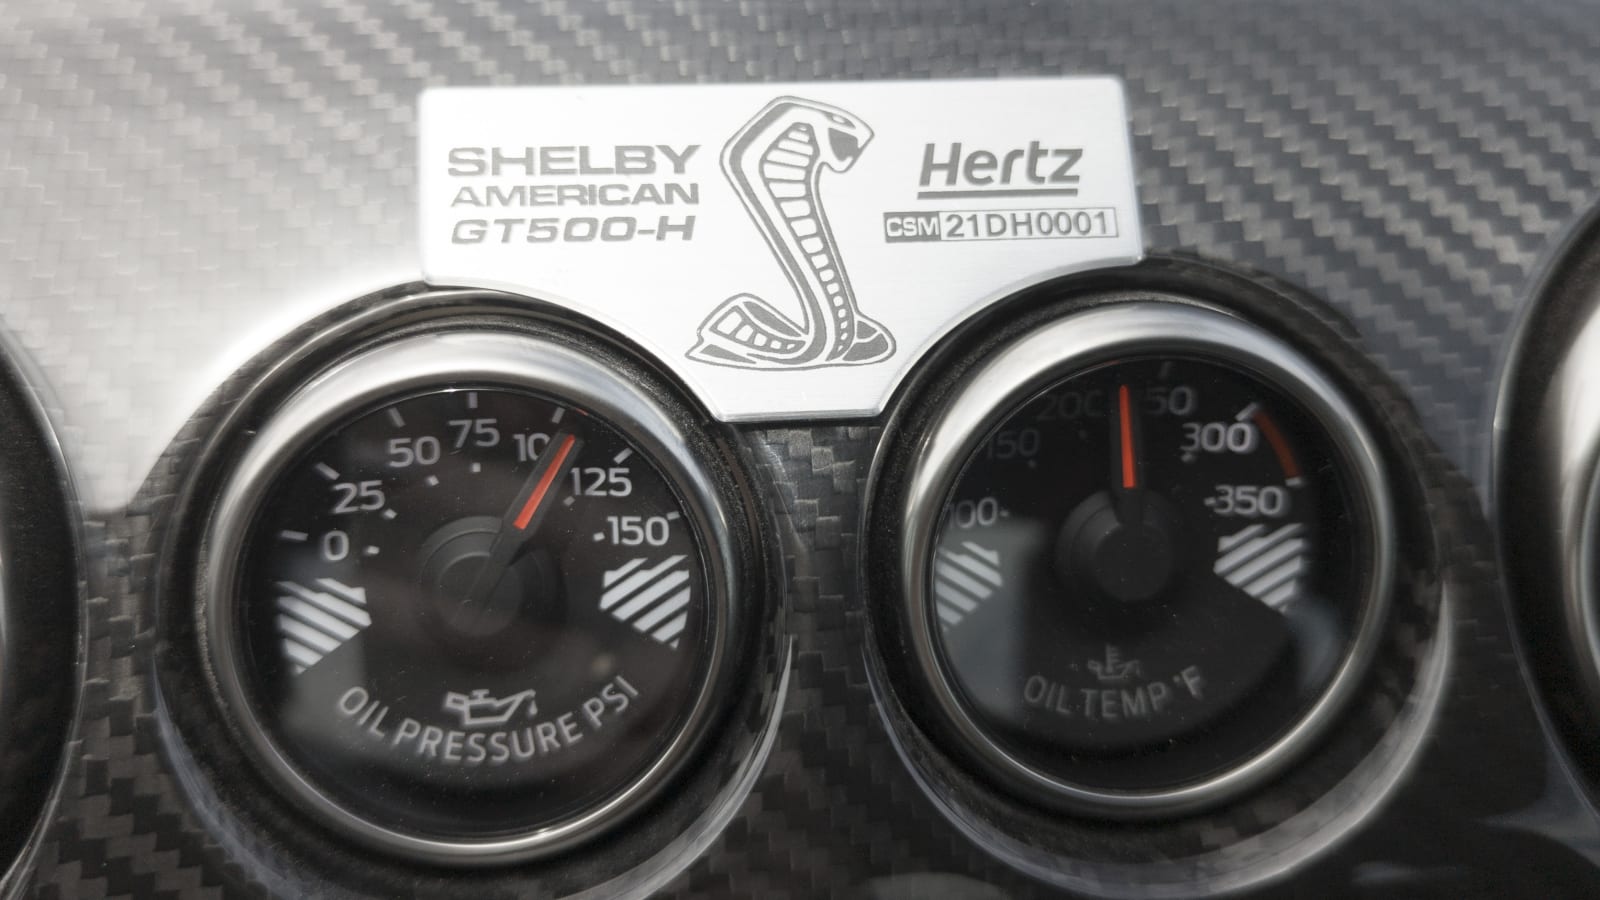 Shelby GT500-H gibt den Hertz-Mietern wahnsinnige 900 PS an die Hand